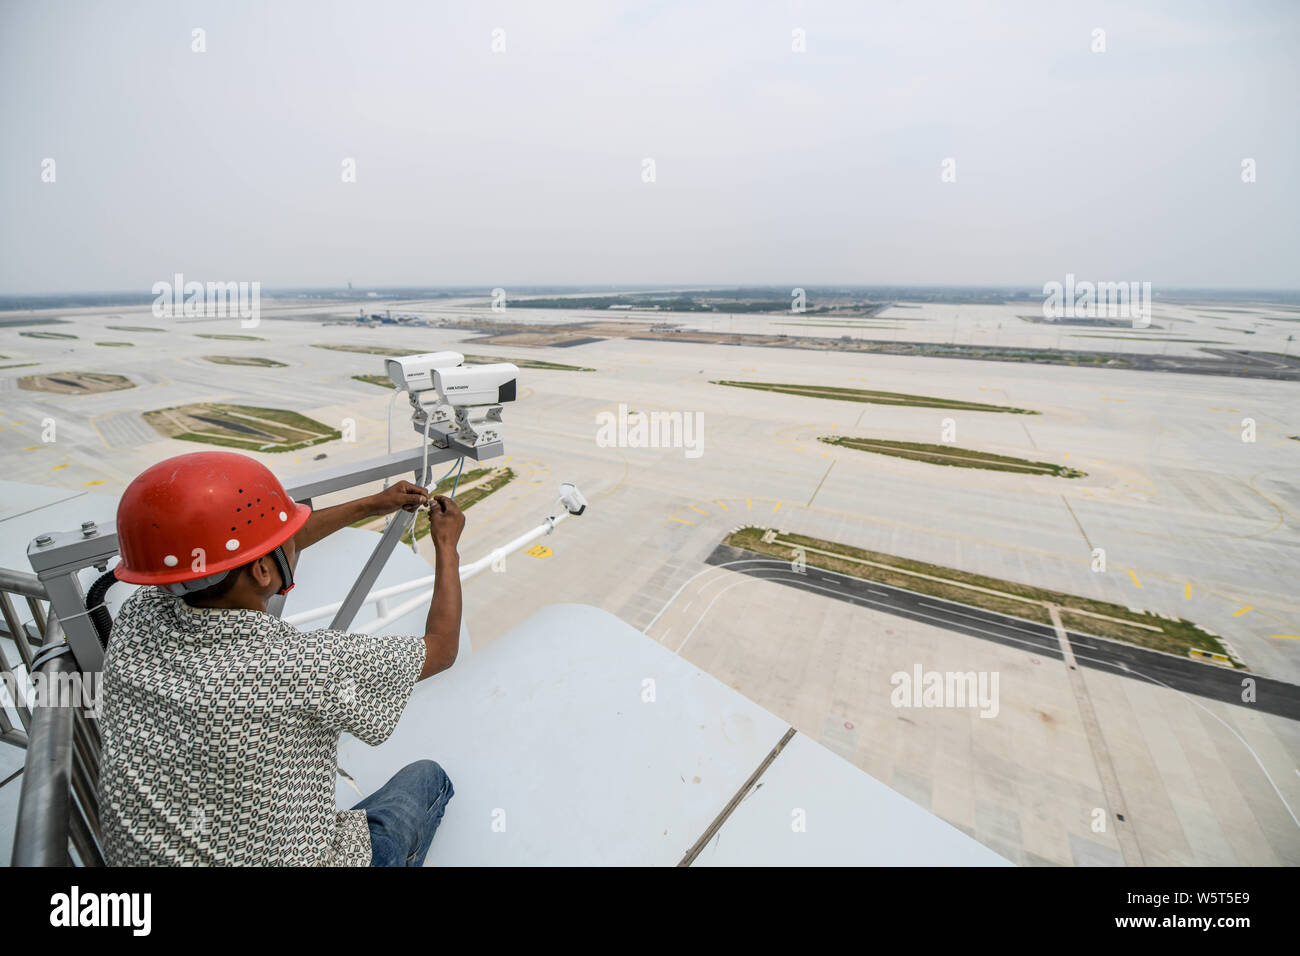 Un trabajador chino es visto en la torre de control del tráfico aéreo, conocido como el "ojo de Fénix", en el Aeropuerto Internacional de Pekín Capital en Beijing, Chi Foto de stock